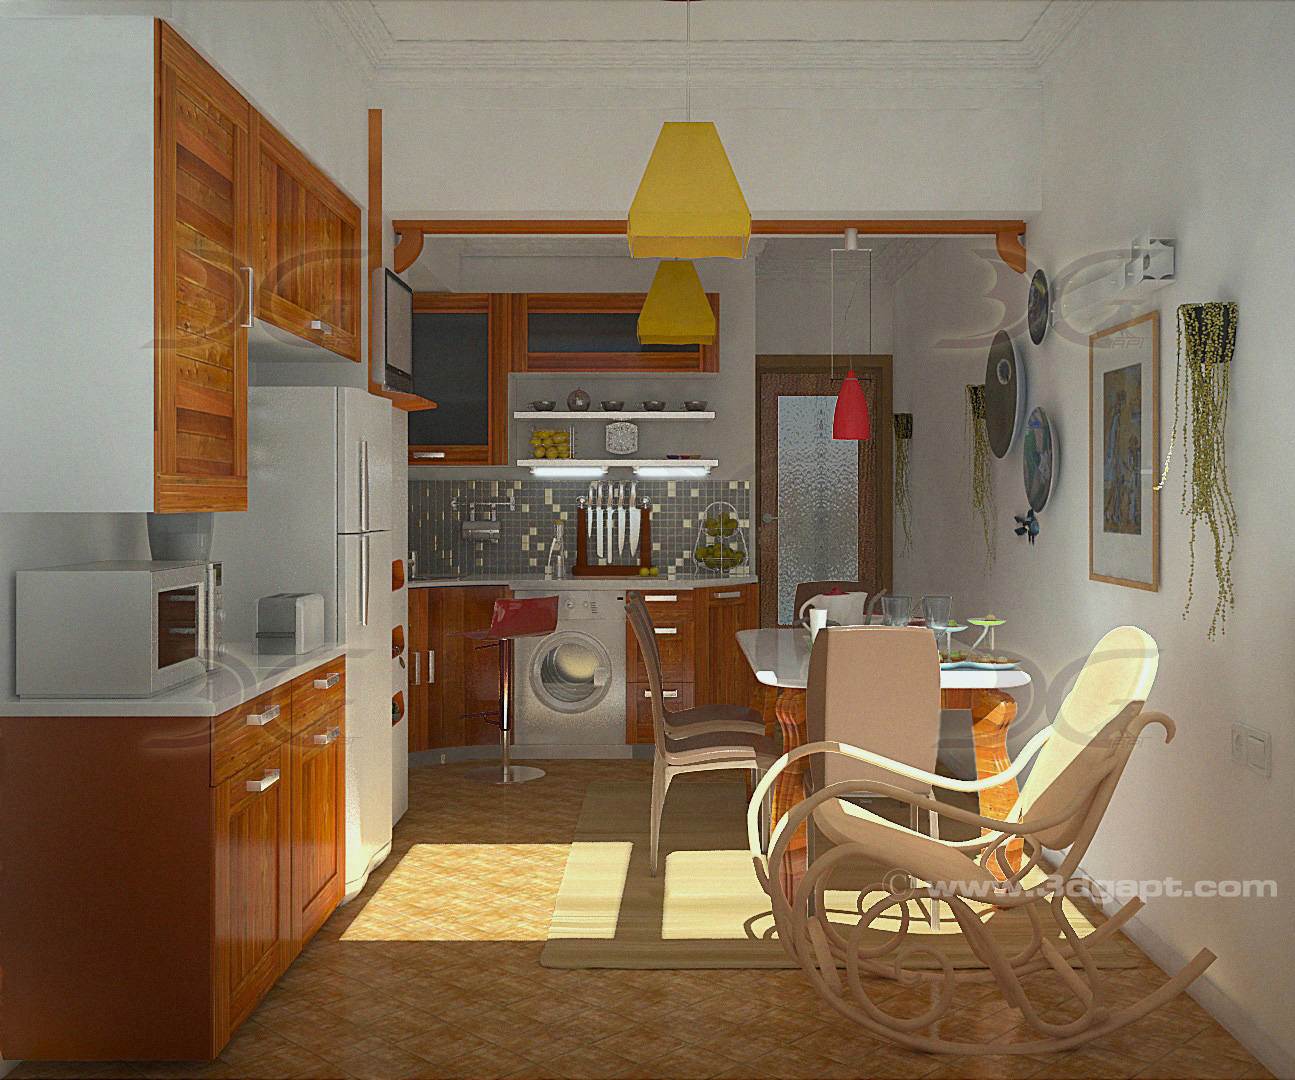 architecture interior kitchen-3versions 13